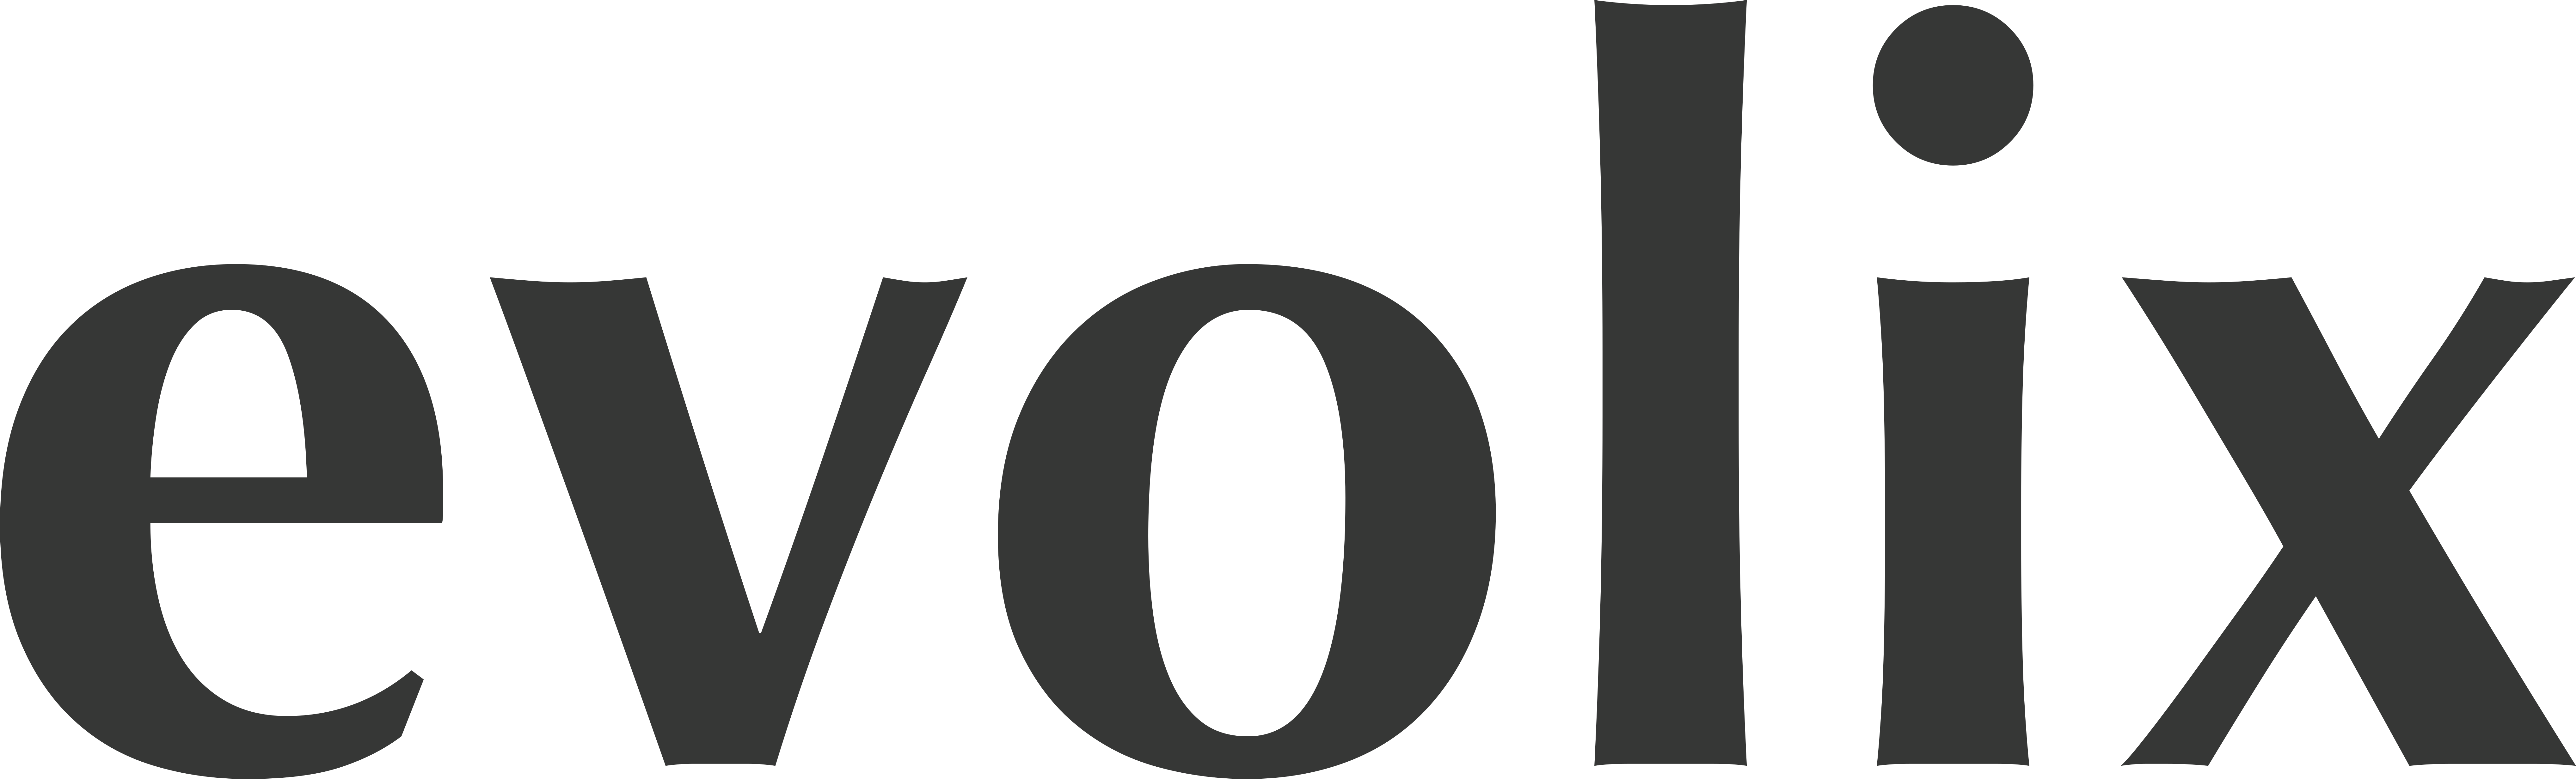 Evolix logo